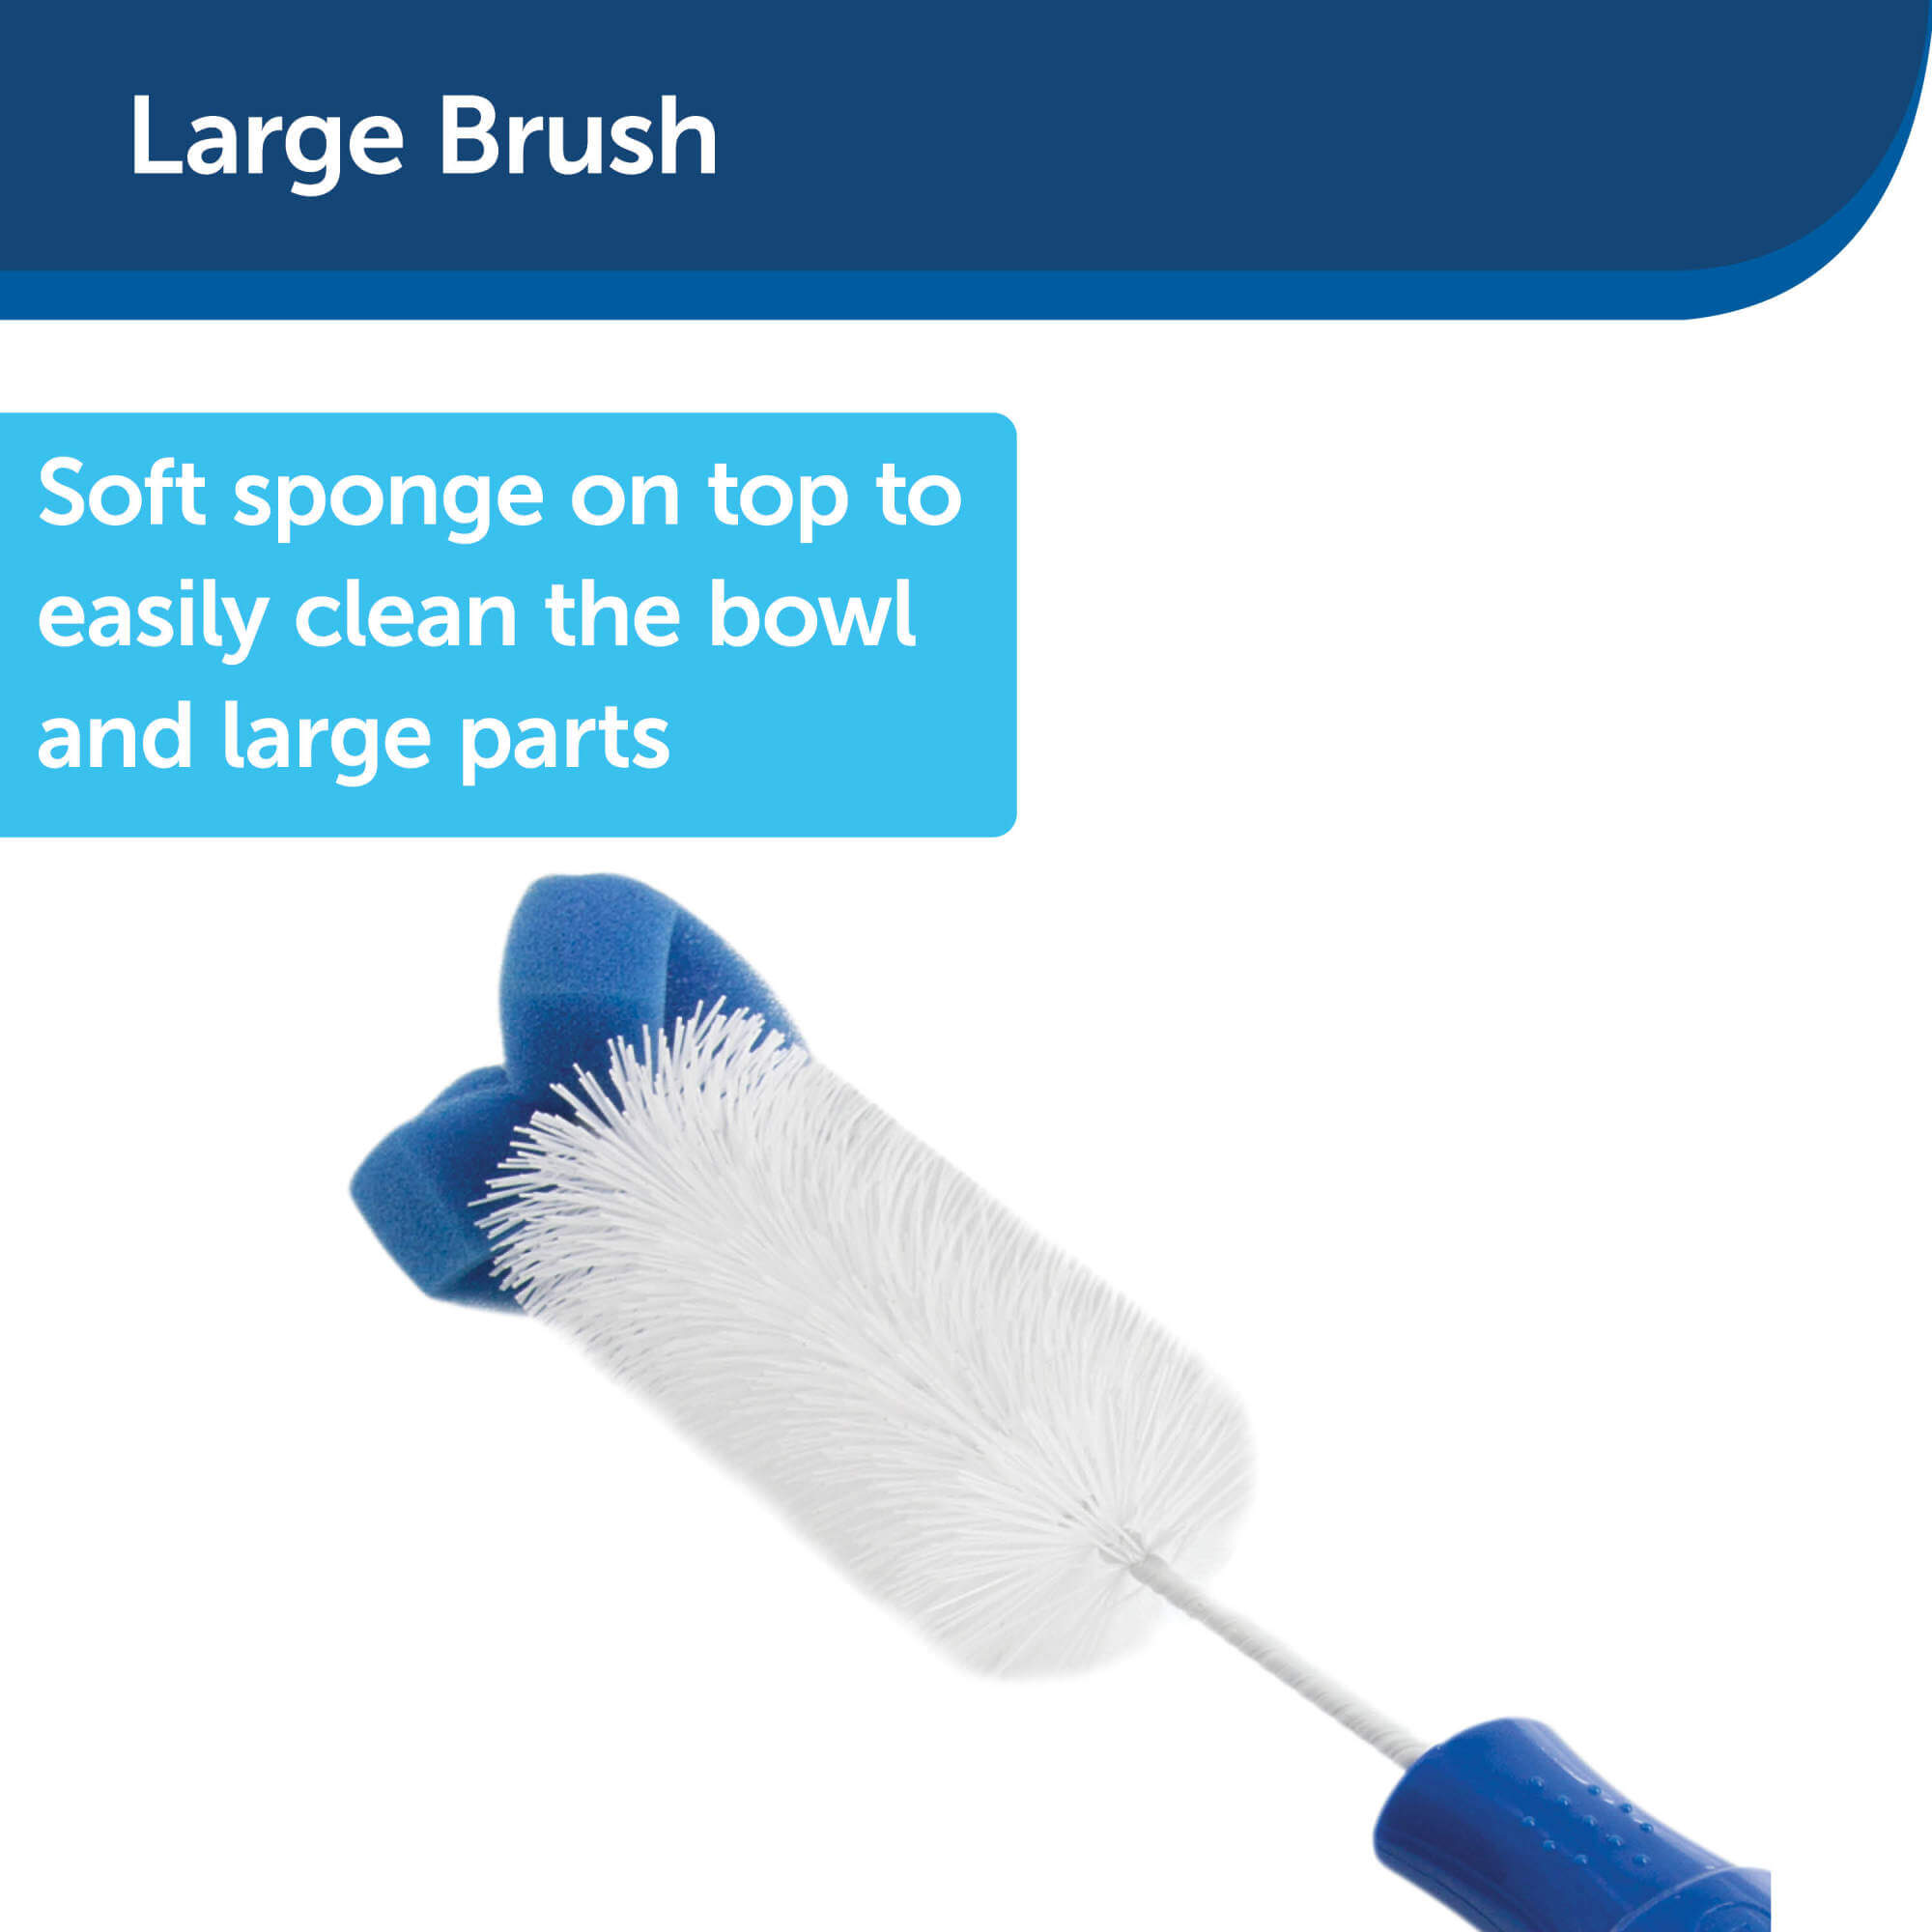 Large brush